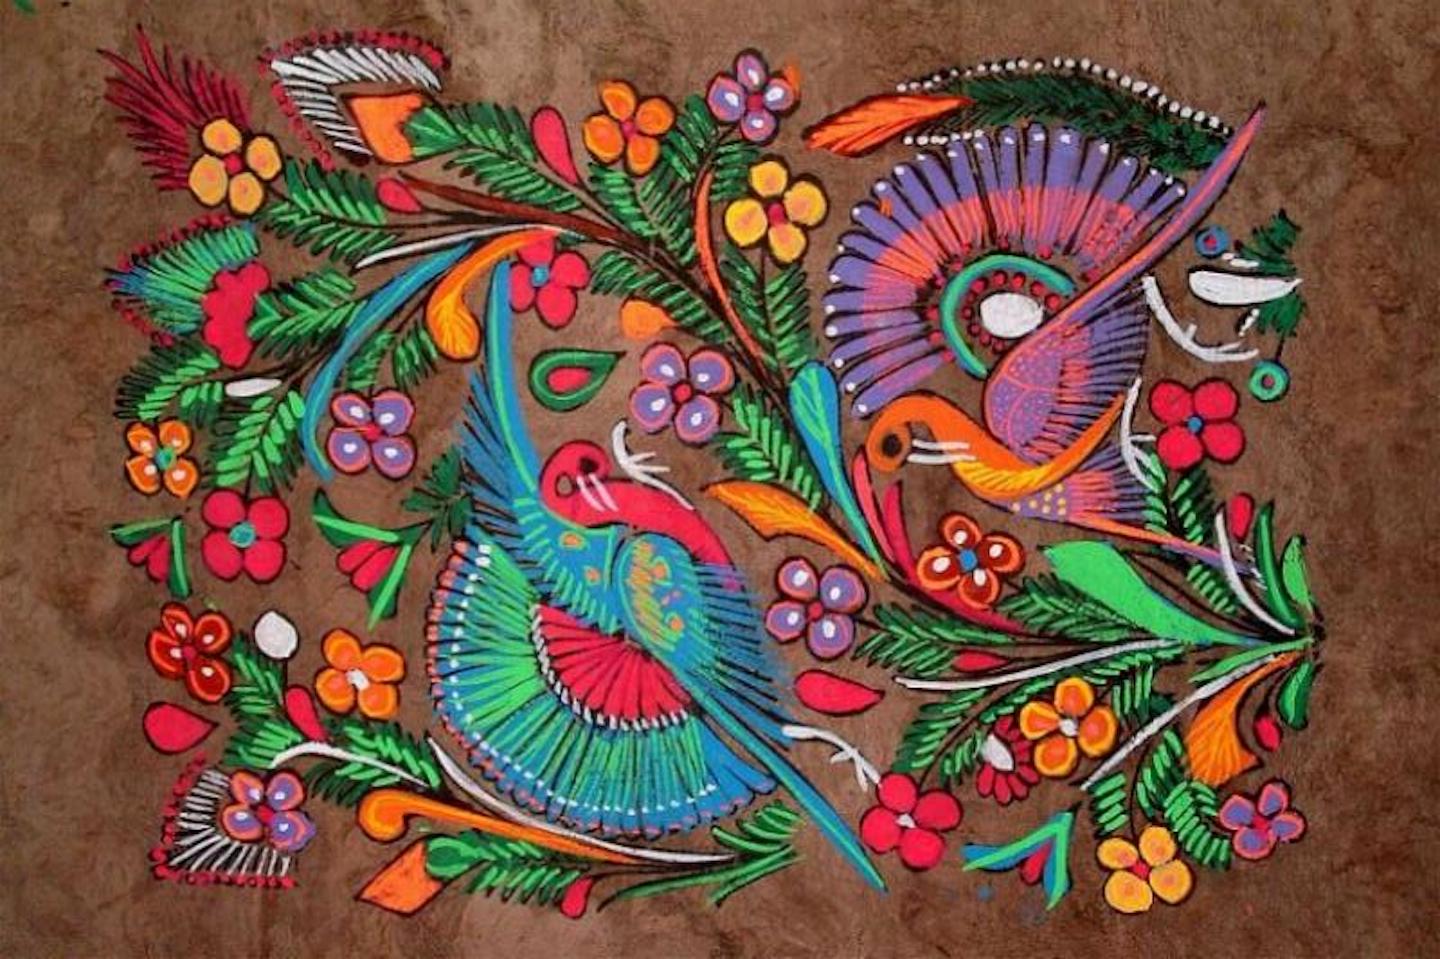 Introducir 57+ images tecnicas de pintura mexicana - Viaterra.mx